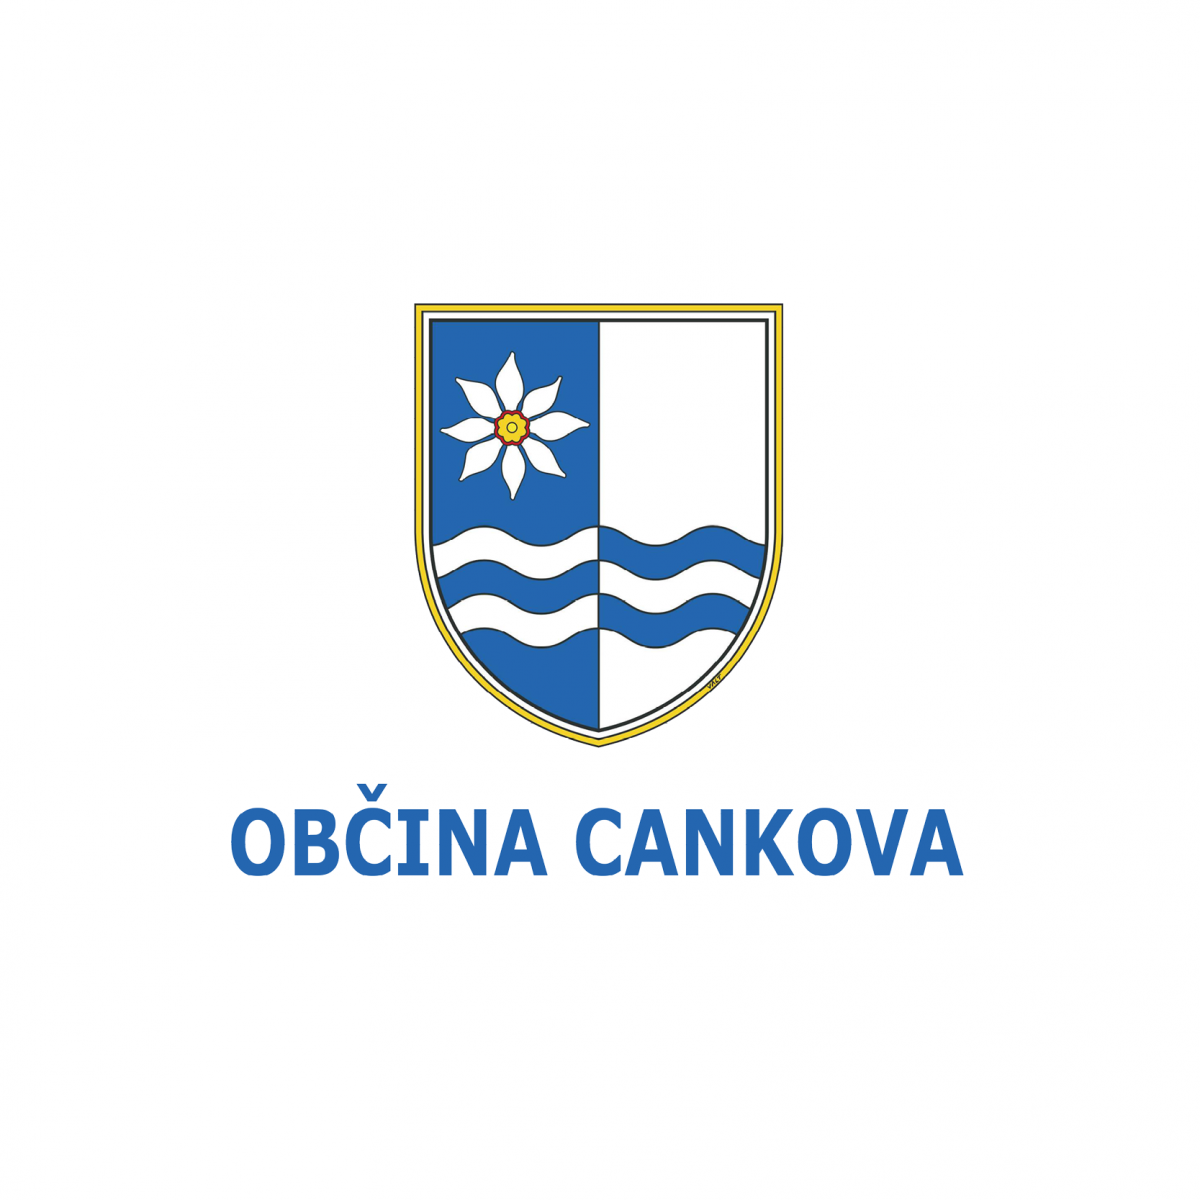 Občina Cankova